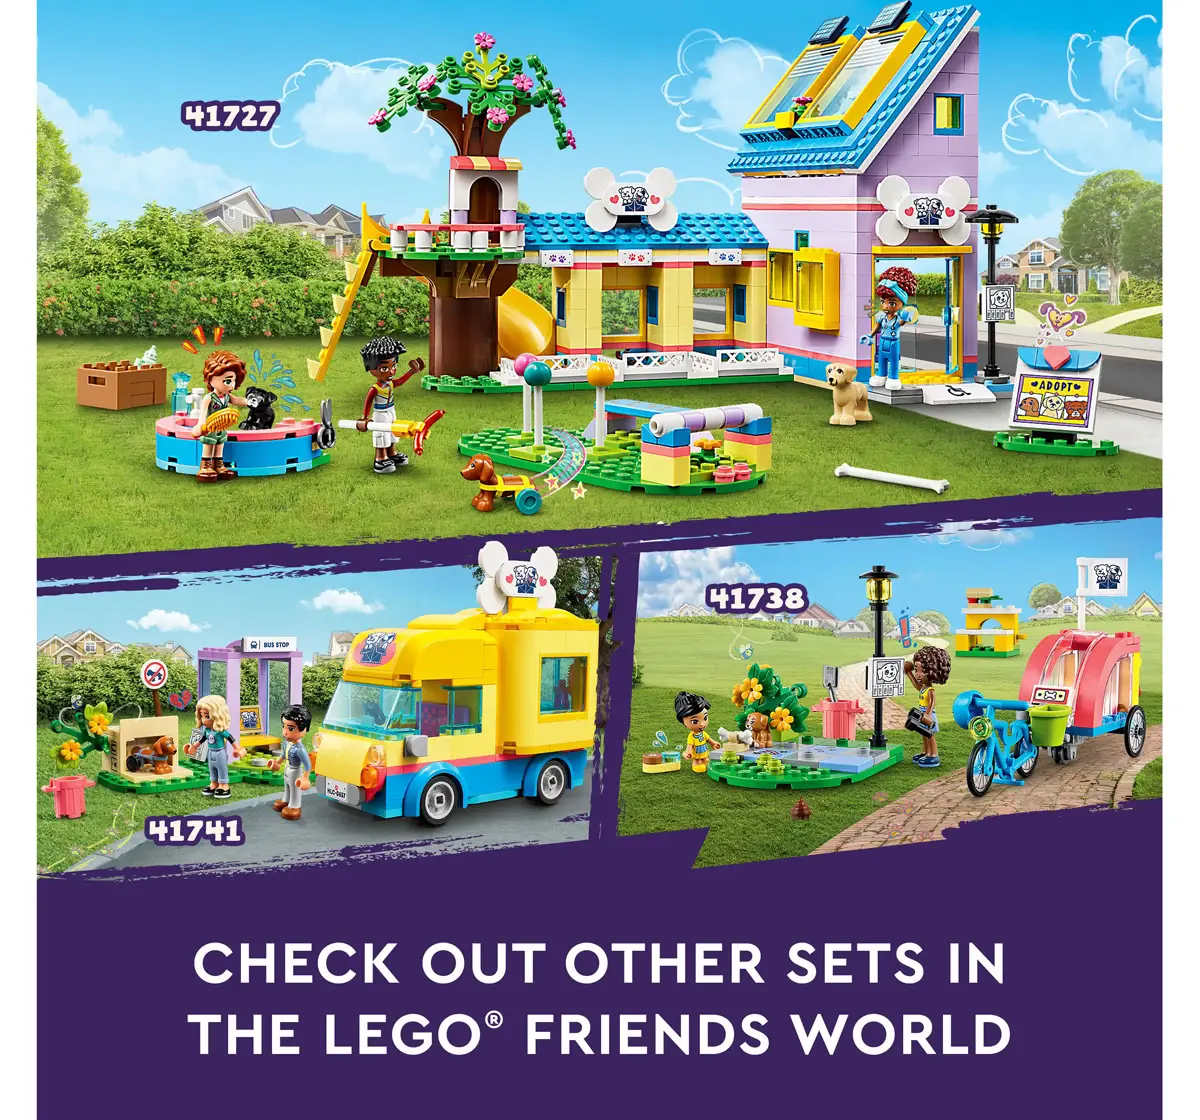 Lego Friends Dog Rescue Center Building Toy Set 41727 Multicolour For Kids Ages 7Y+ (617 Pieces)